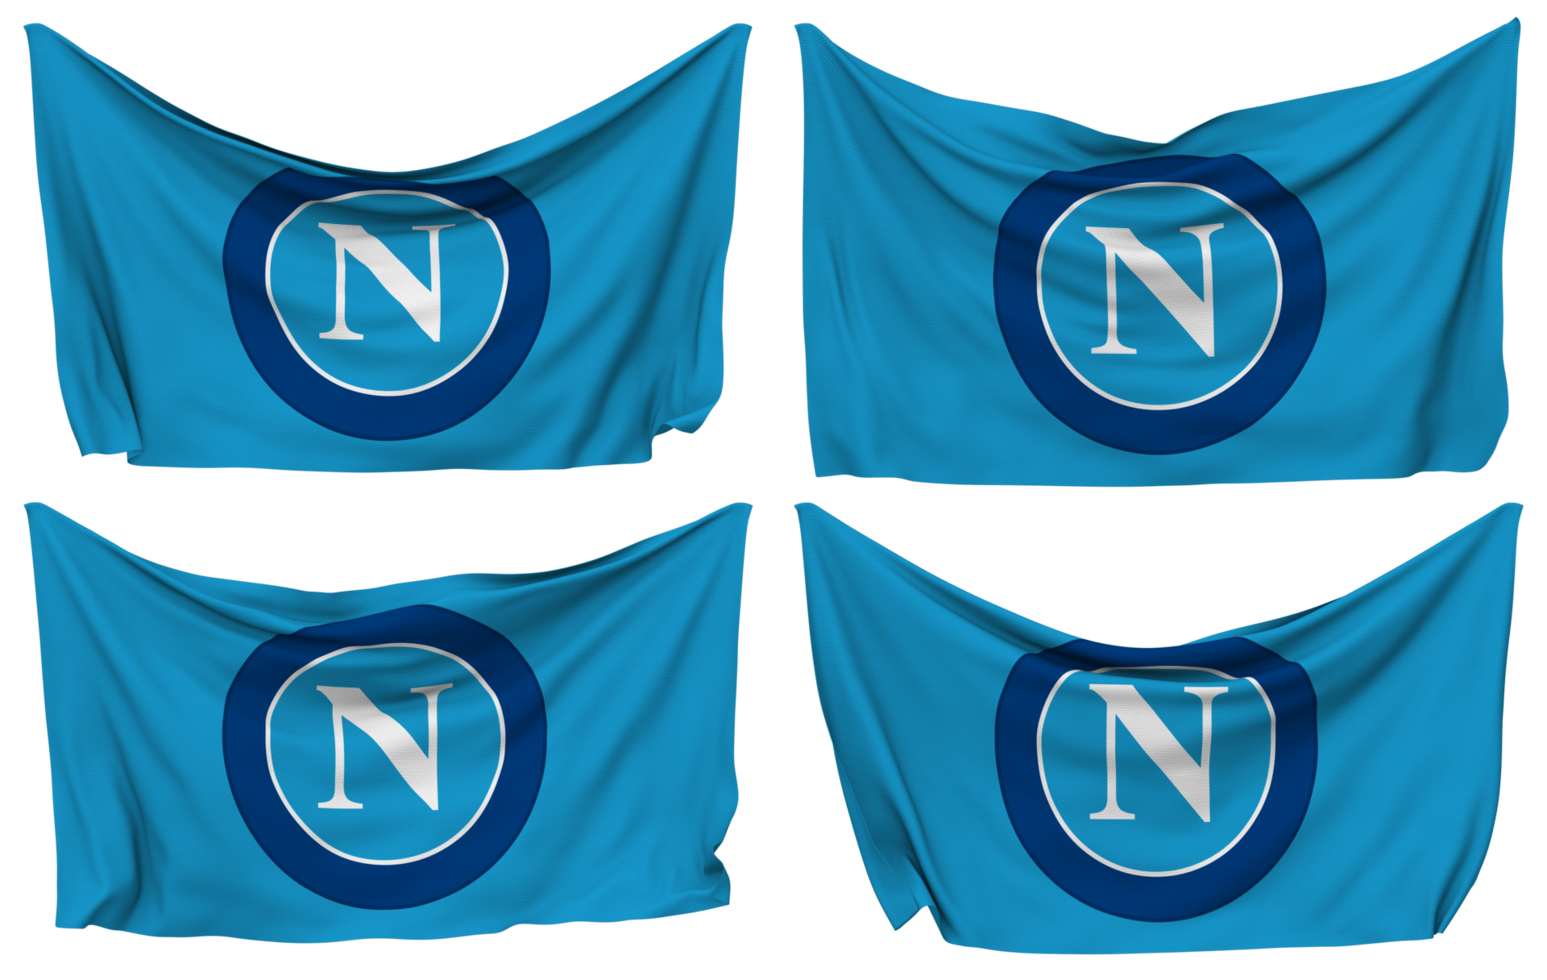 société sportive calcio Naples, sc Napoli épinglé drapeau de coins, isolé avec différent agitant variantes, 3d le rendu png